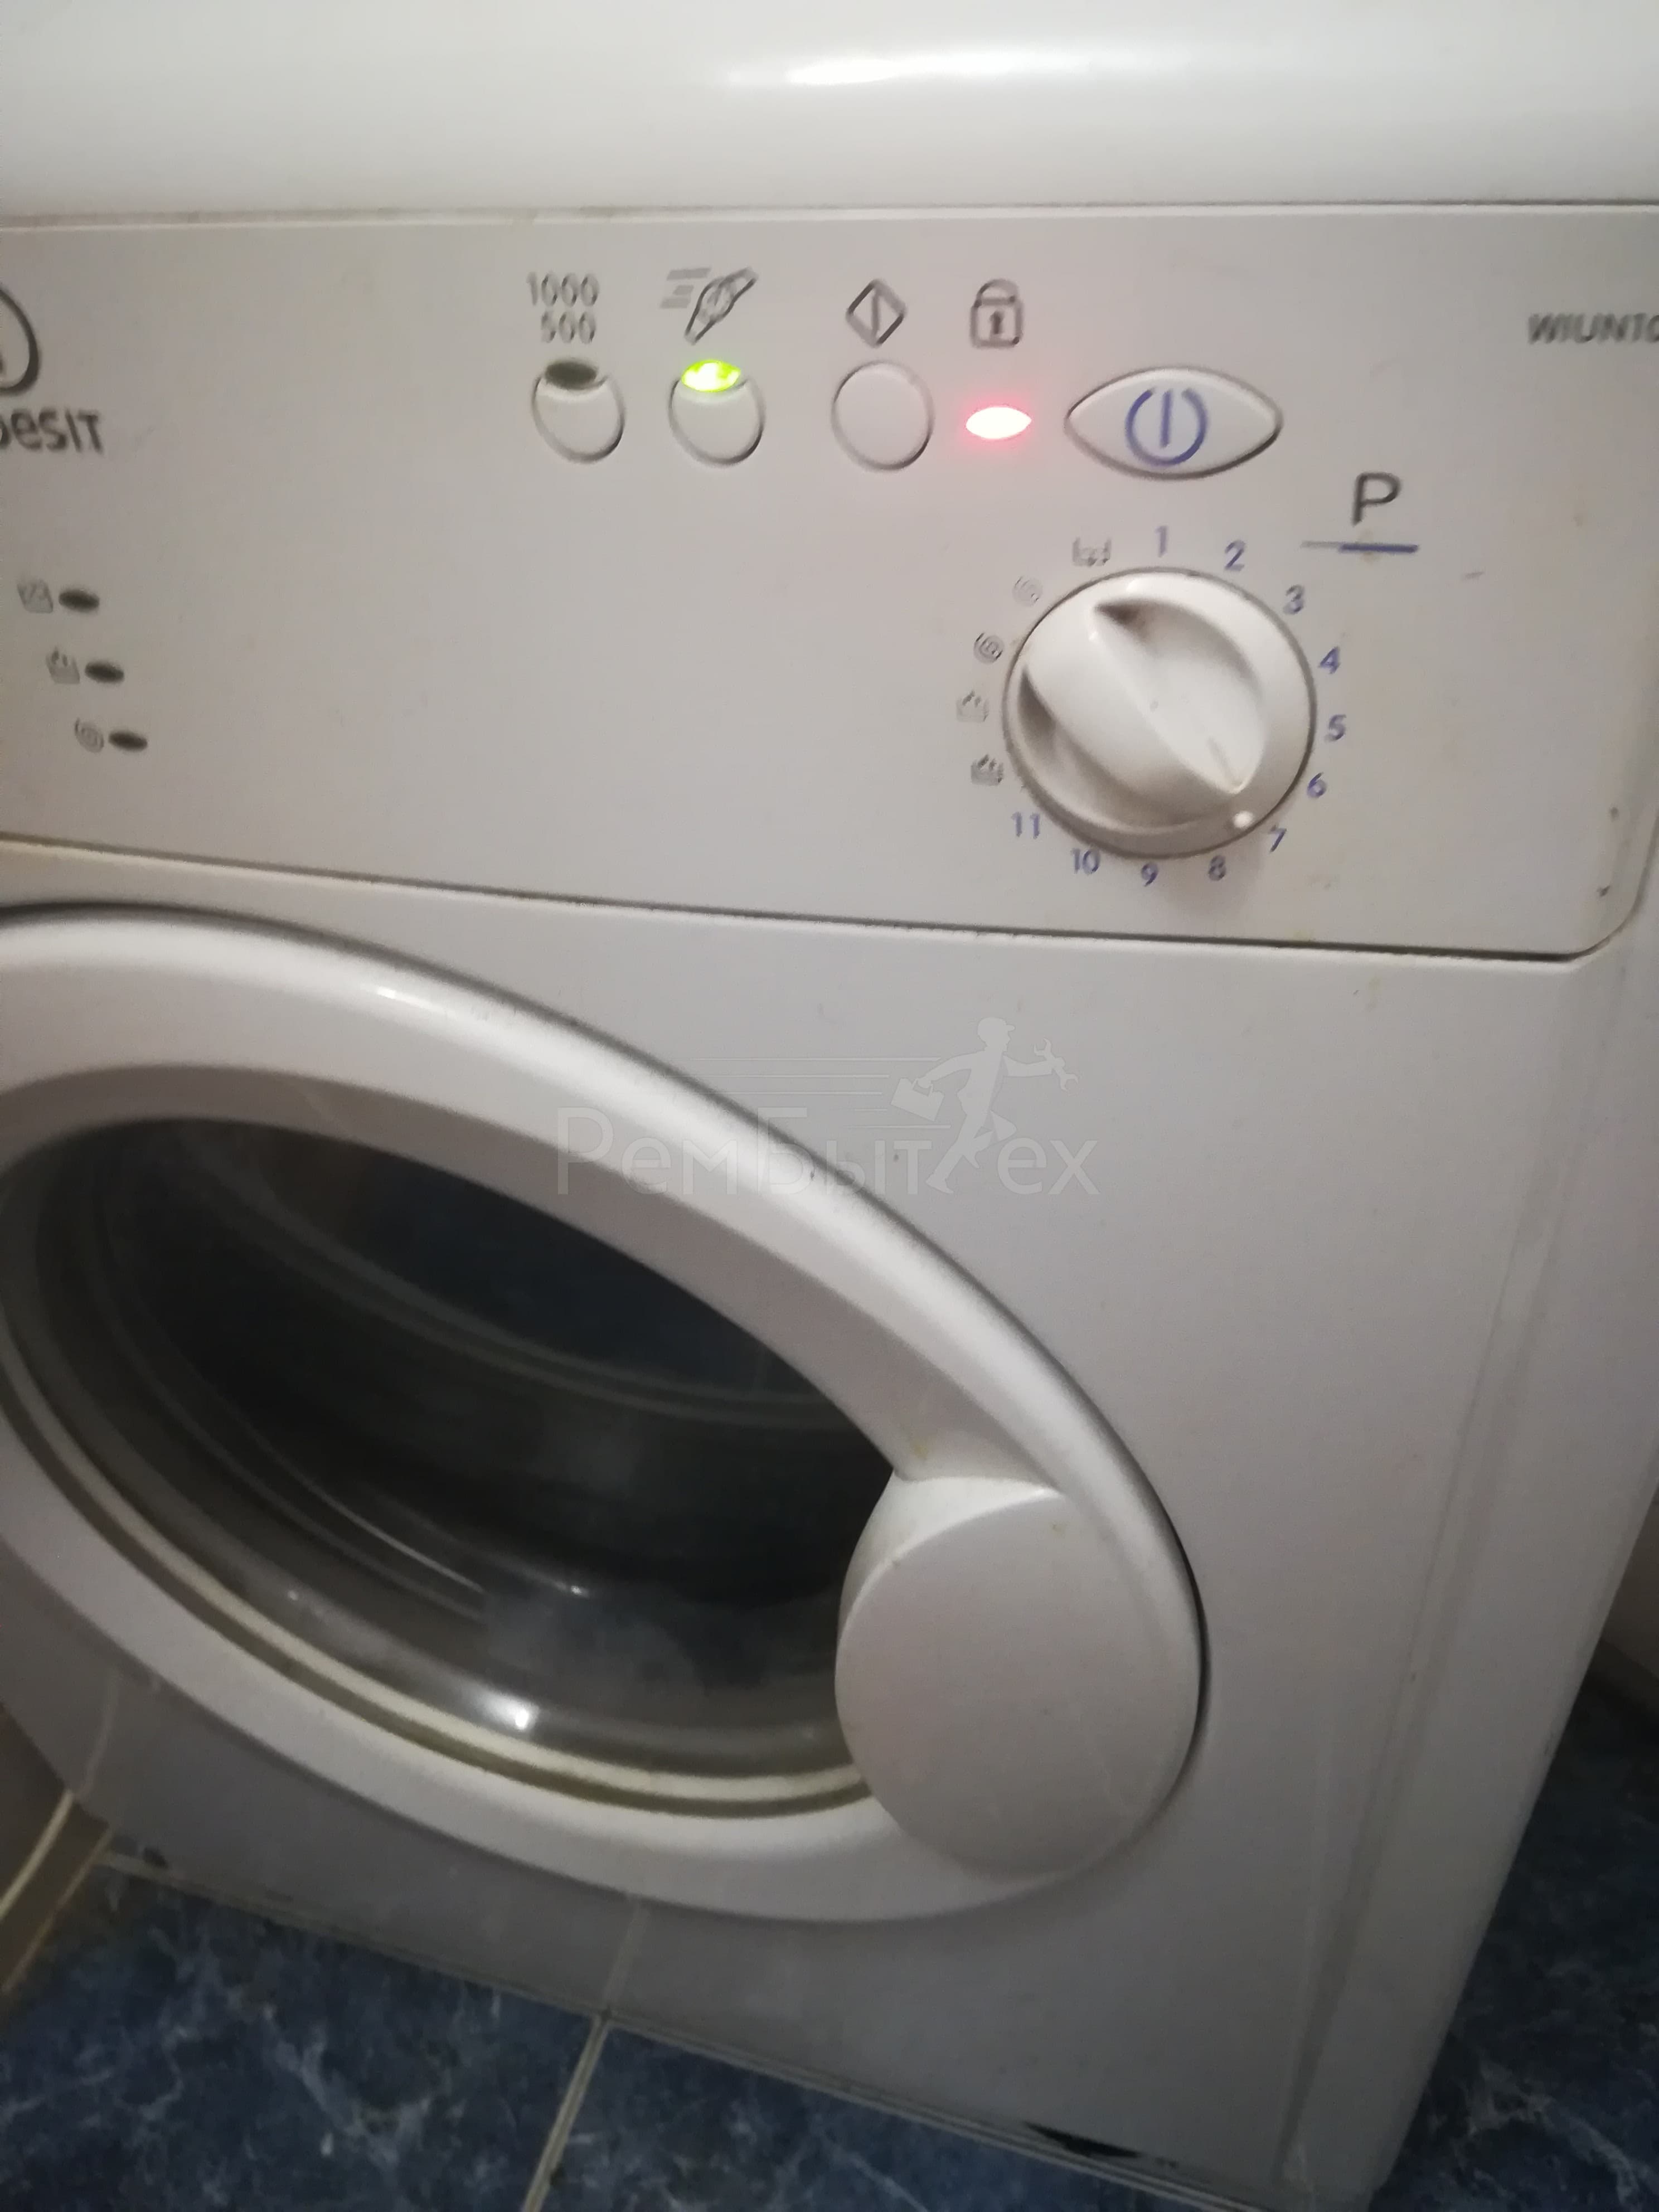 Почему не работает отжим в стиральной машине «индезит» — причины